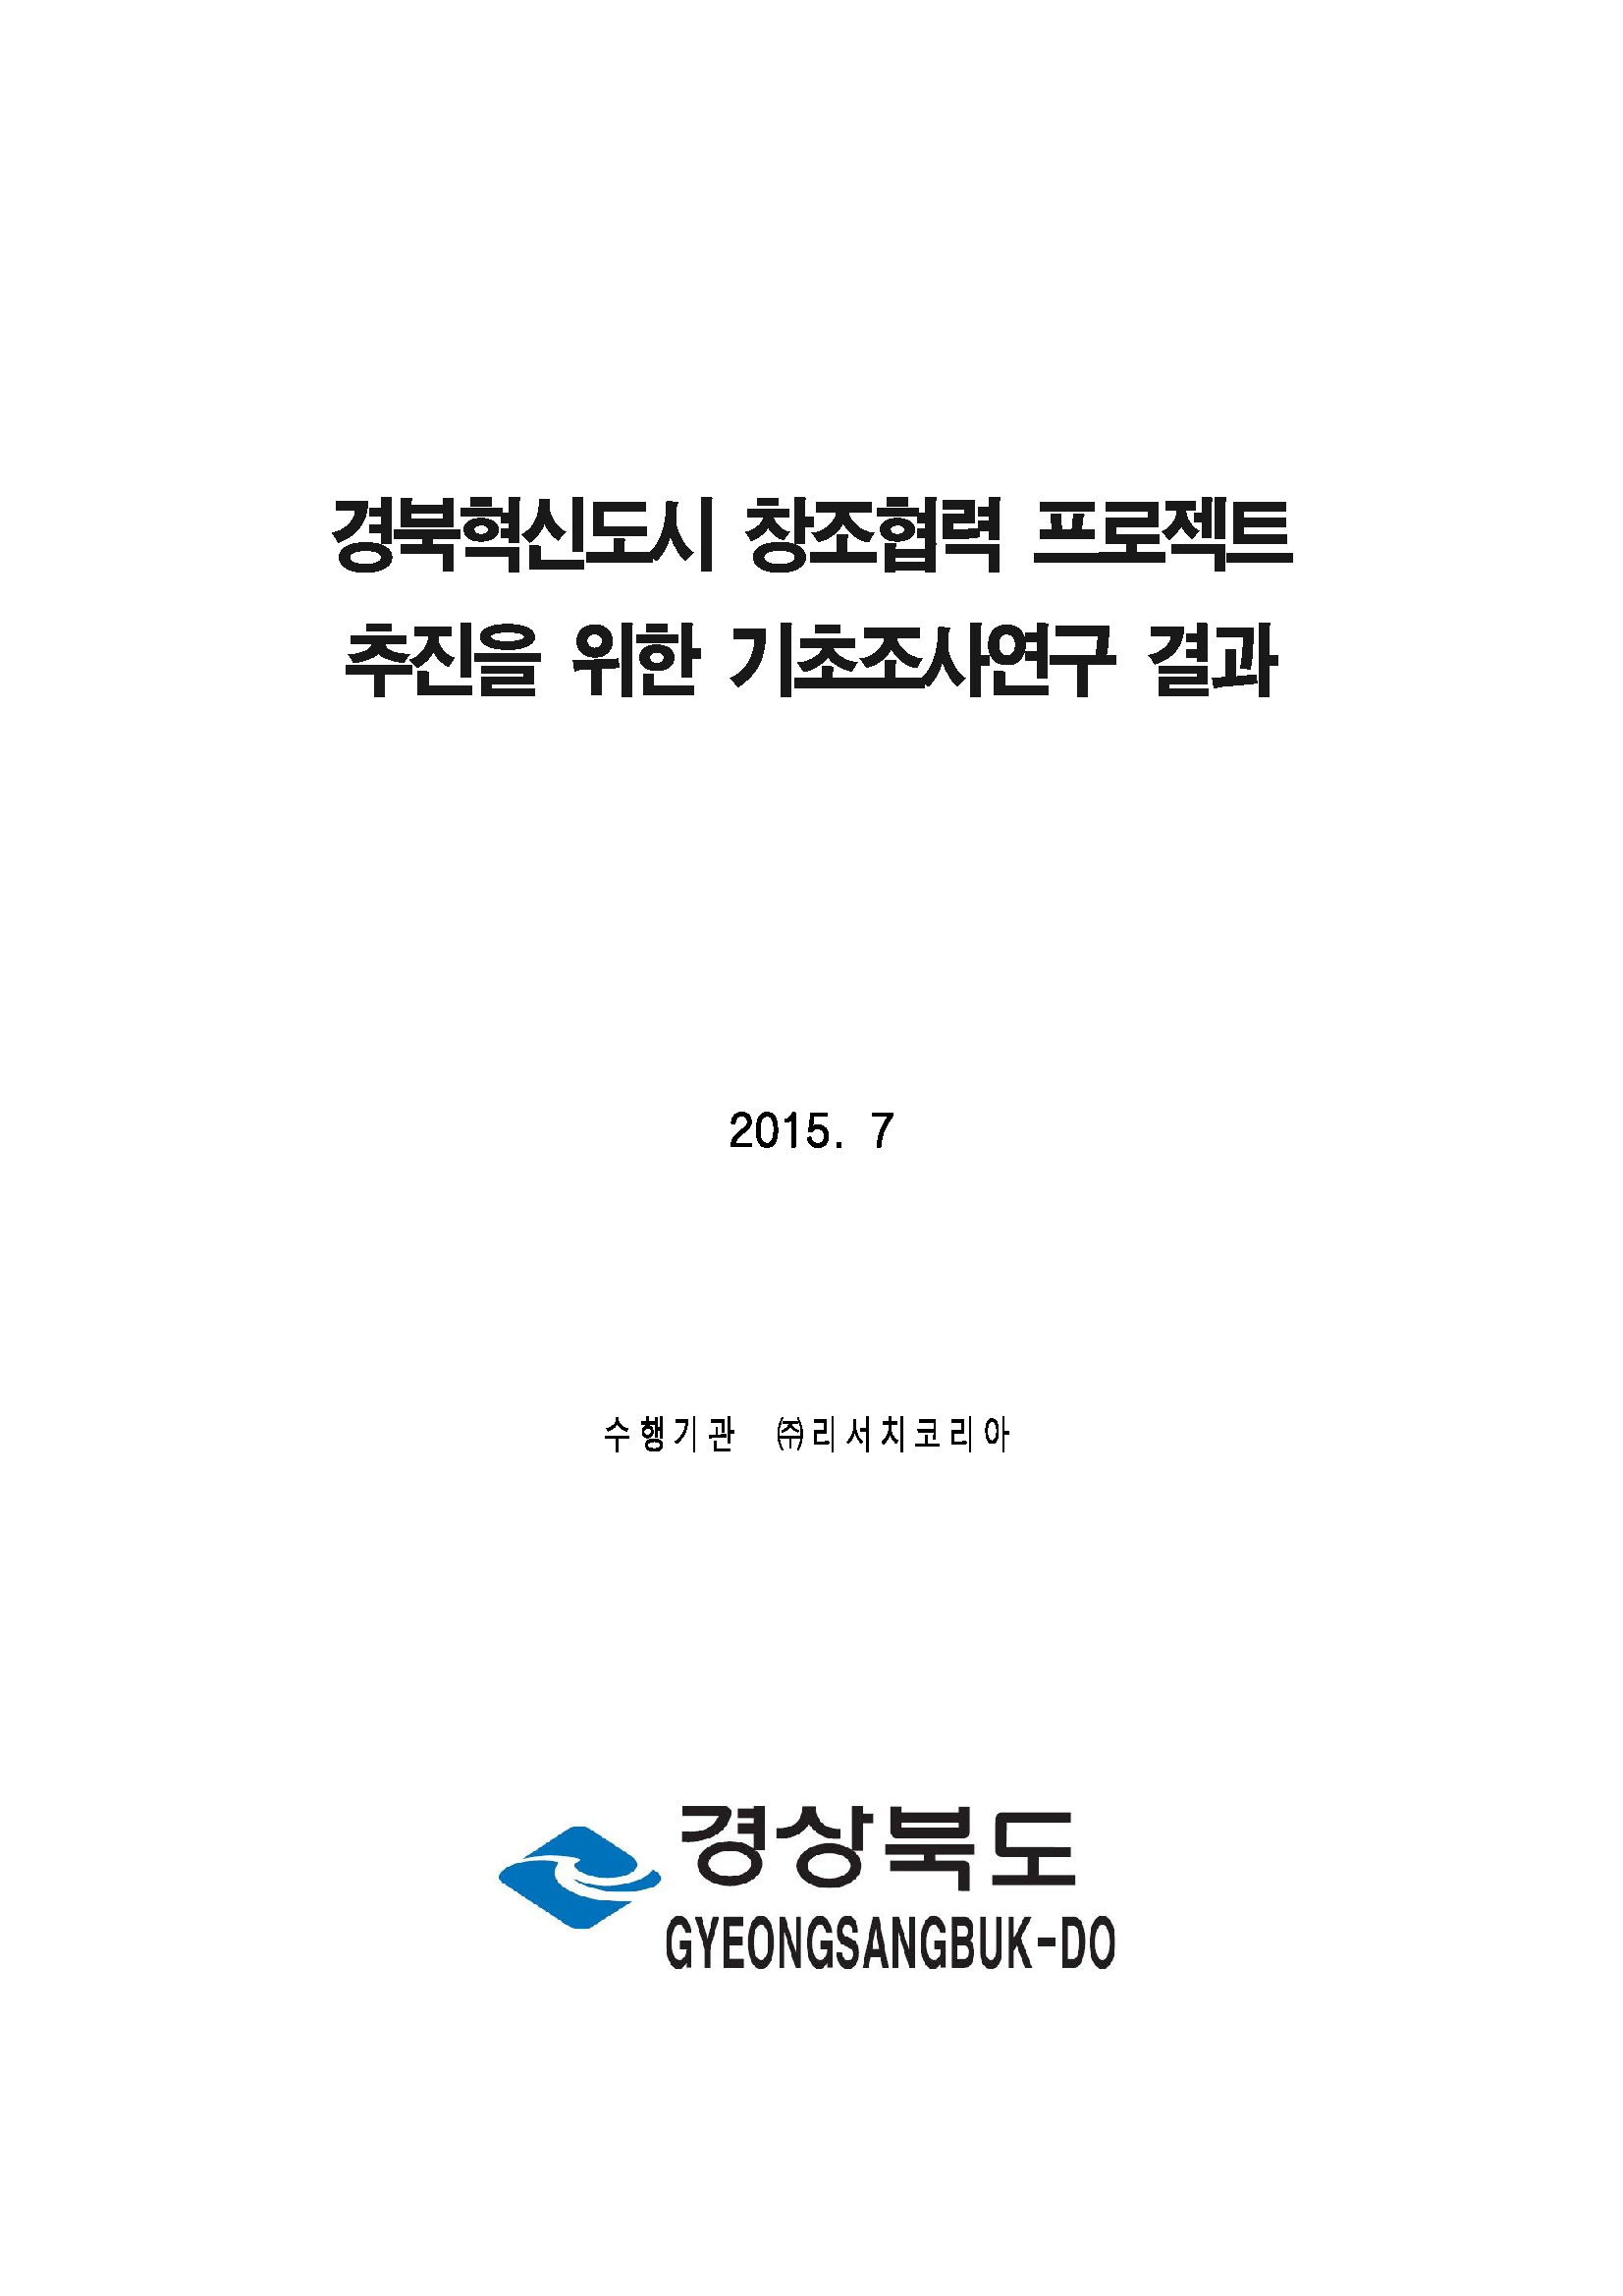 경북혁신도시 협력유관기관 이전조사 연구용역